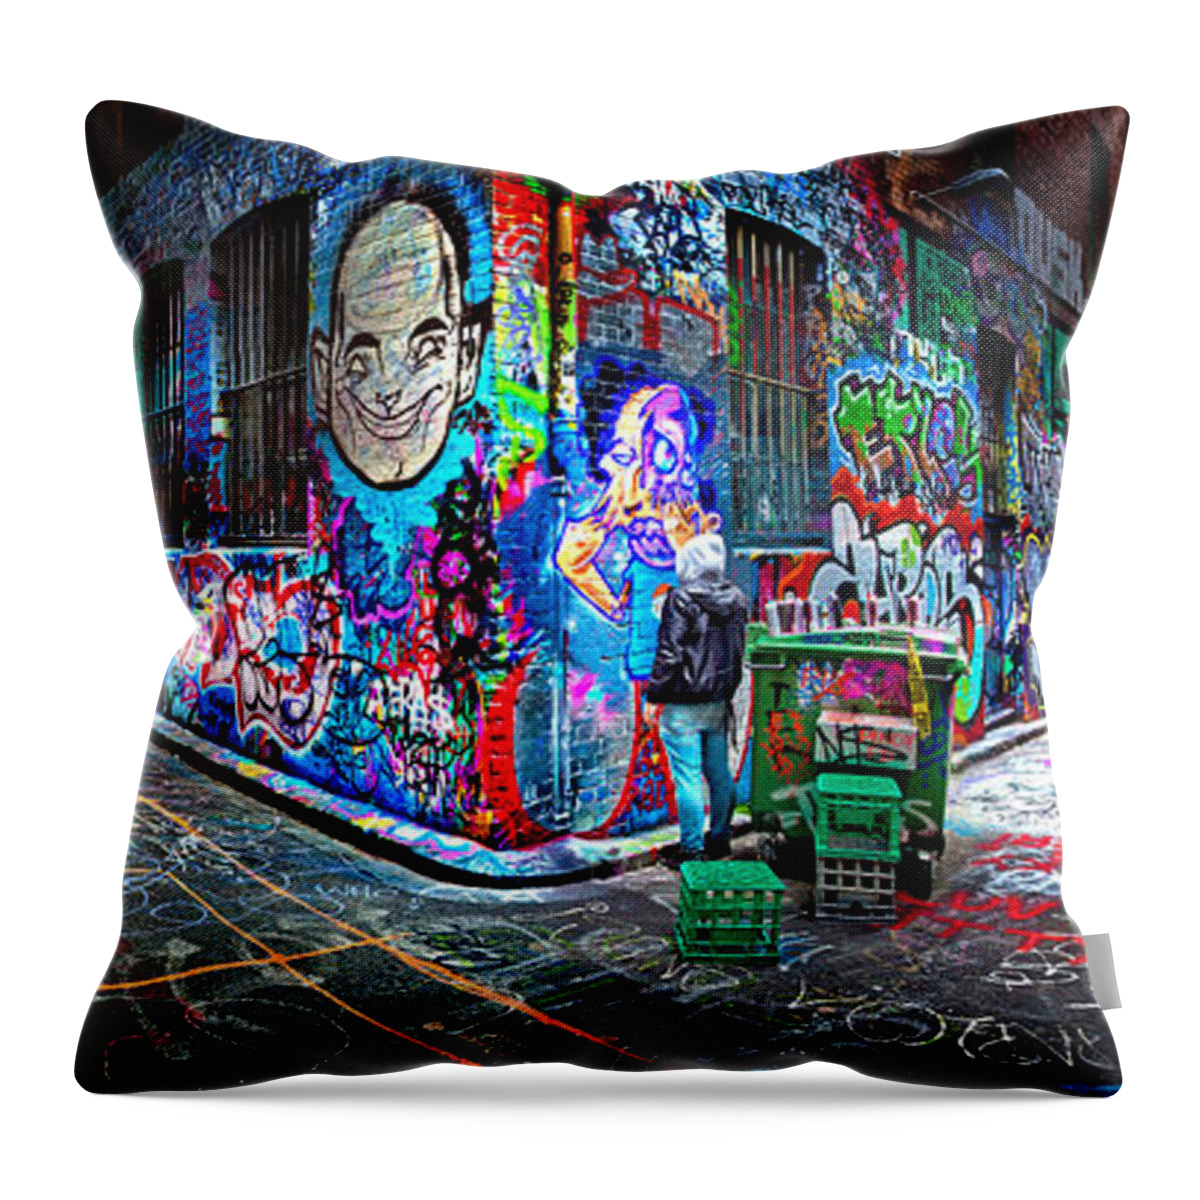 Graffiti Artist Throw Pillow featuring the photograph Graffiti Artist by Az Jackson